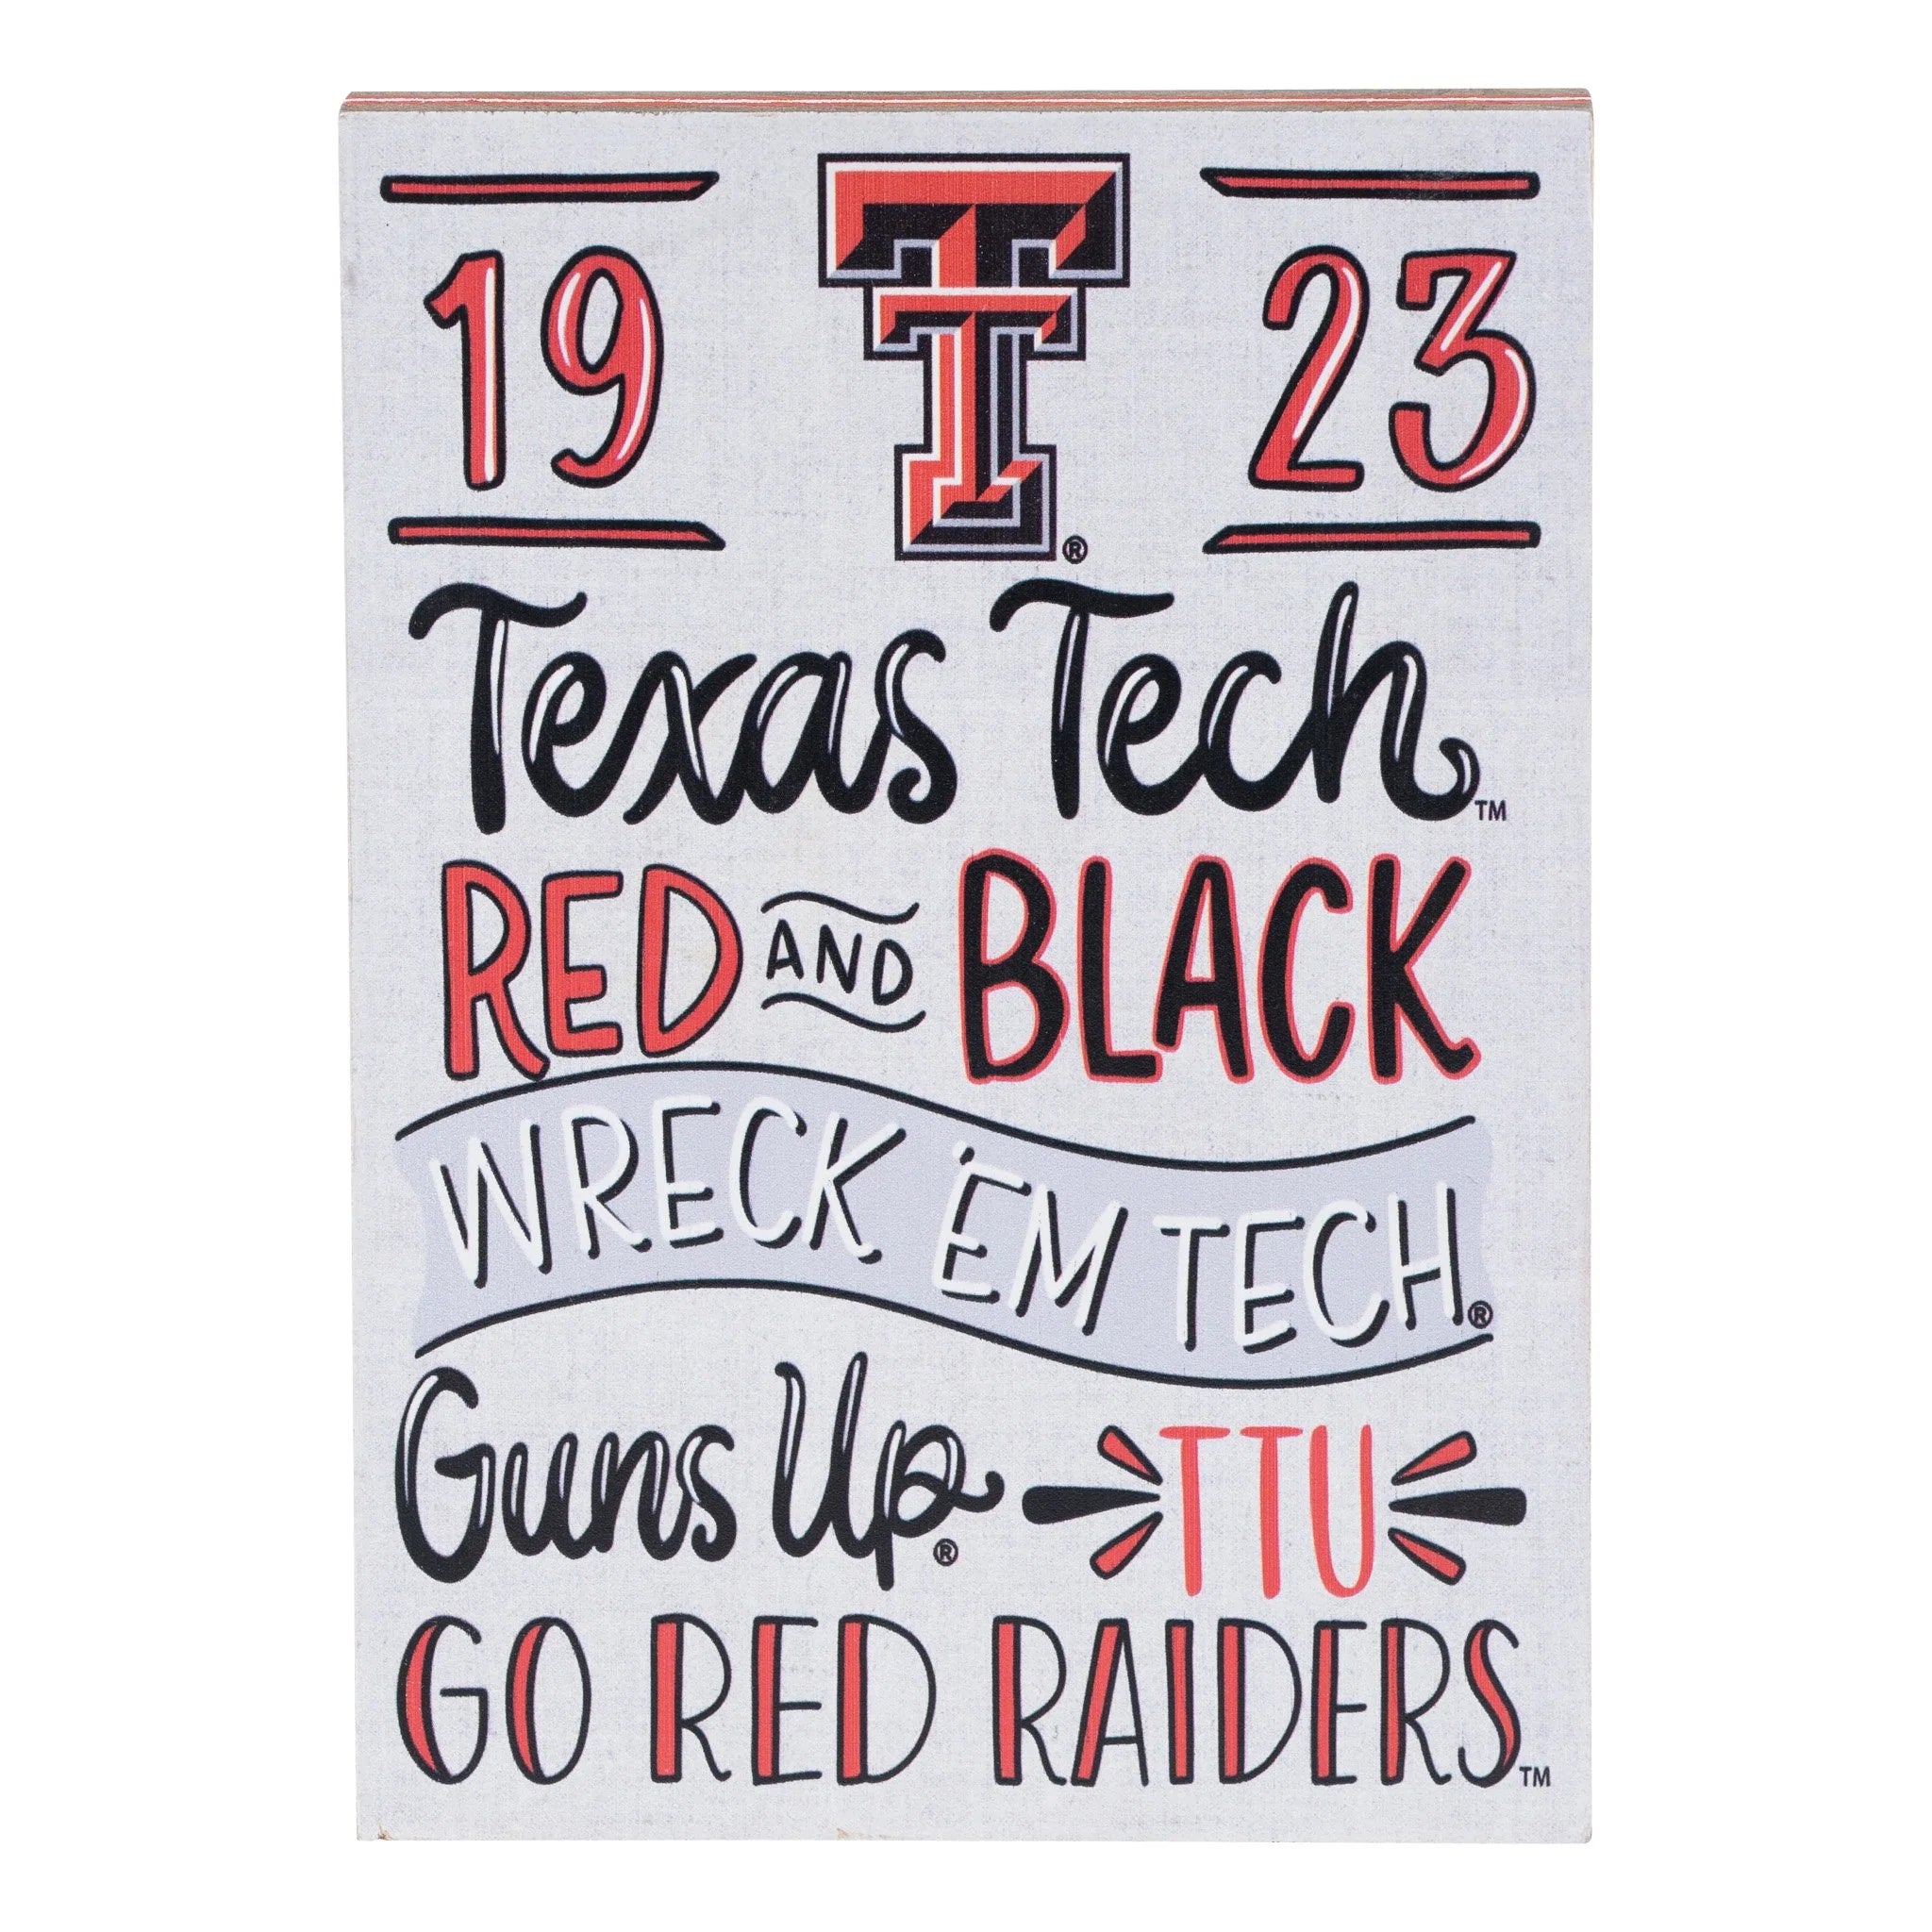 Texas Tech Wreck 'em Tech "Spirit" Block